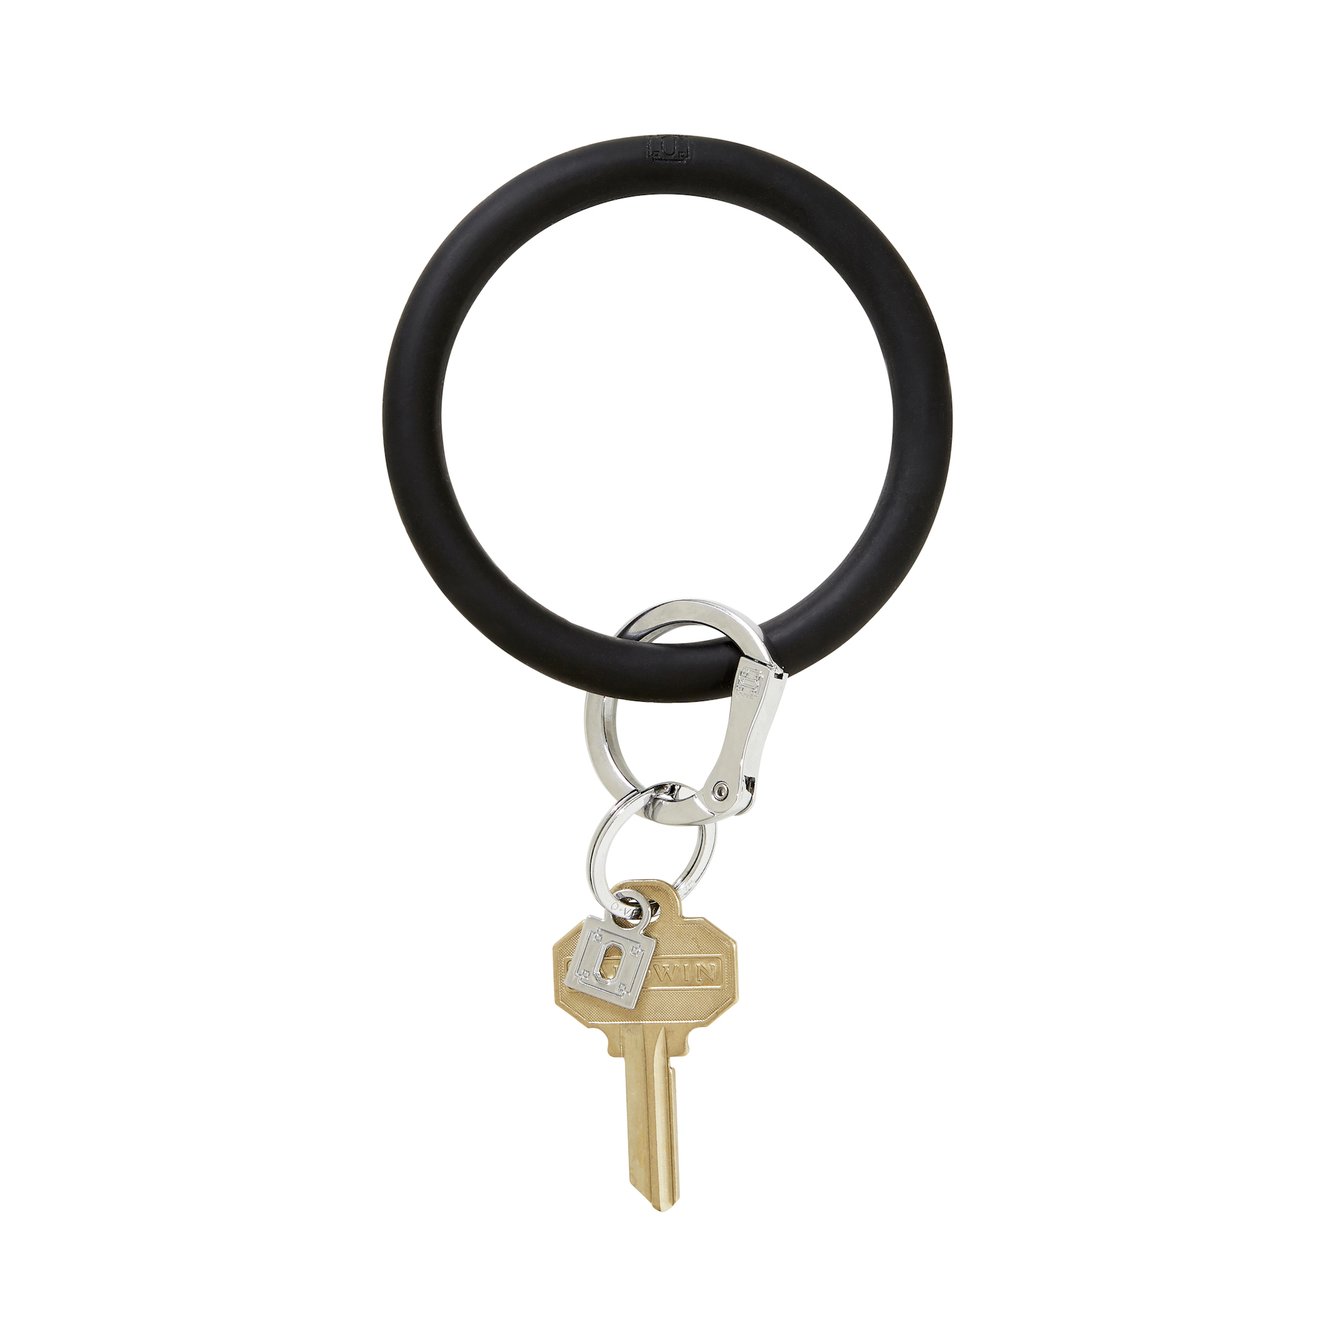 Big O' Silicone Key Ring- Back in Black